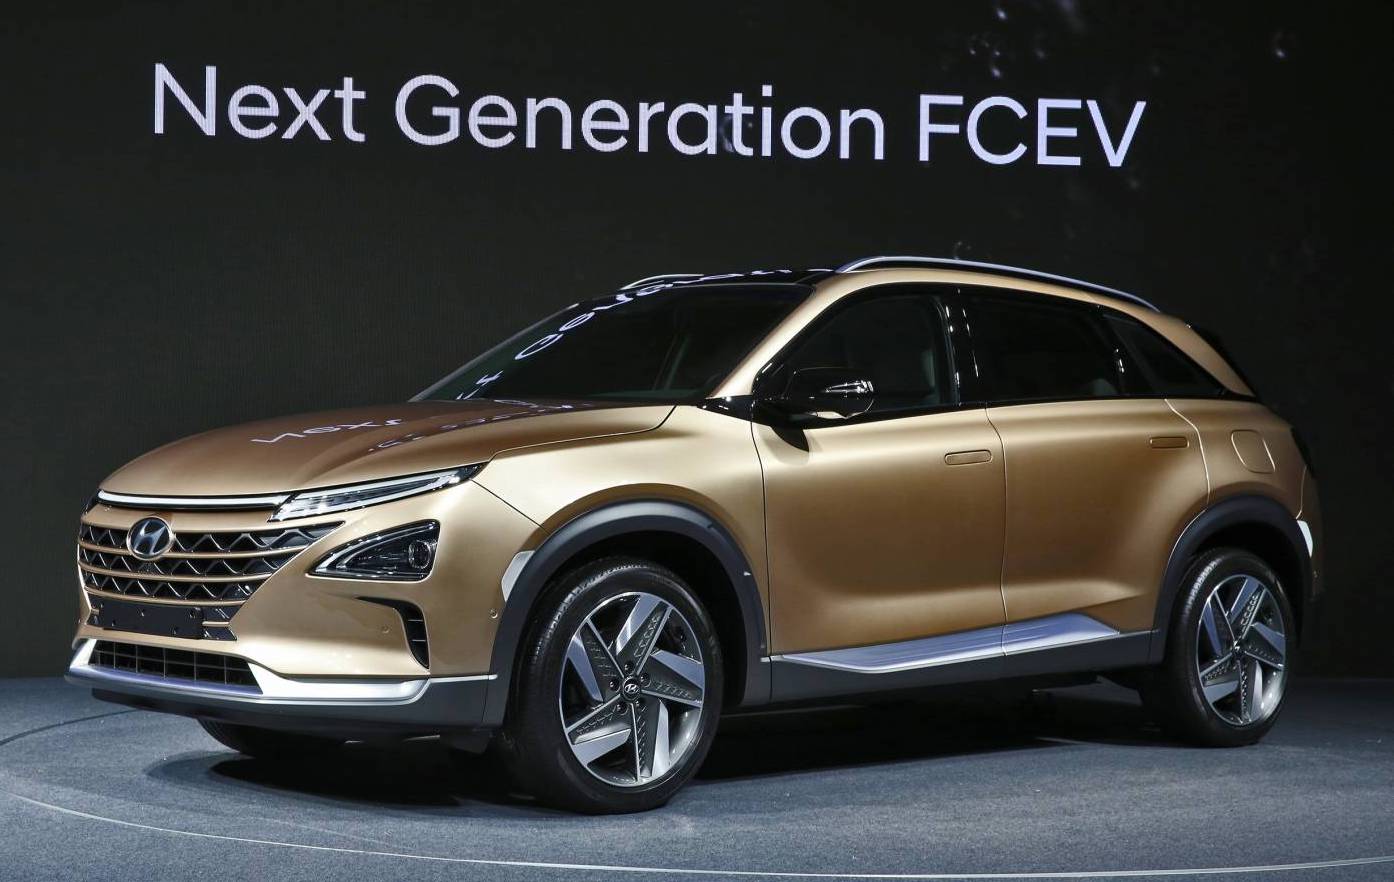 Hyundai previews next-gen FCEV, electric Kona confirmed